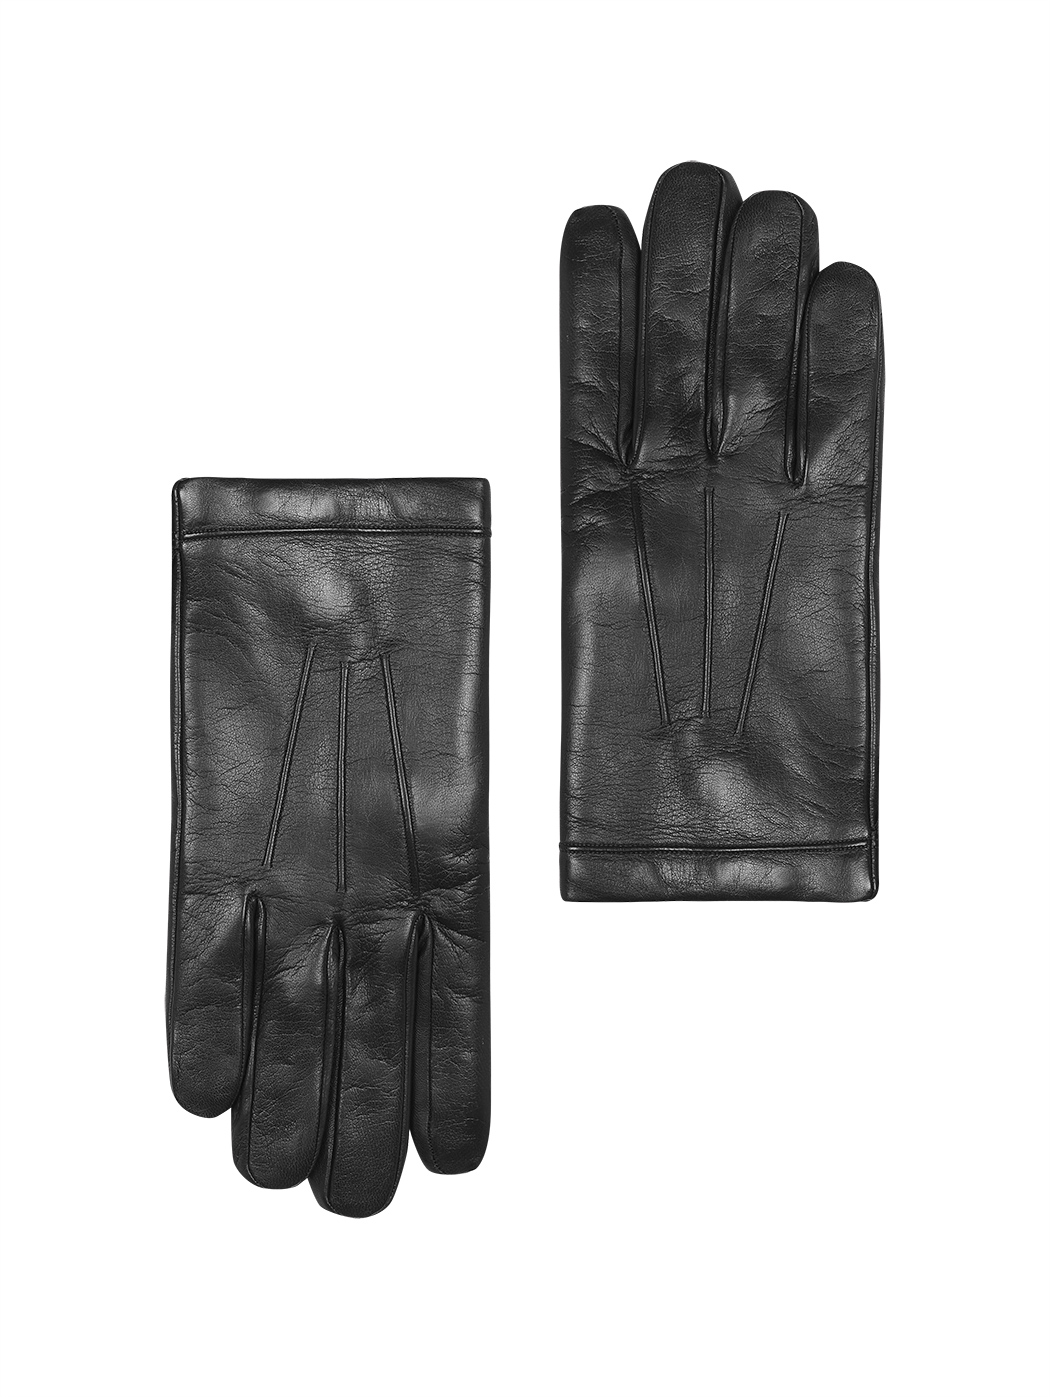 Классические мужские перчатки (кашемир) темно коричневый